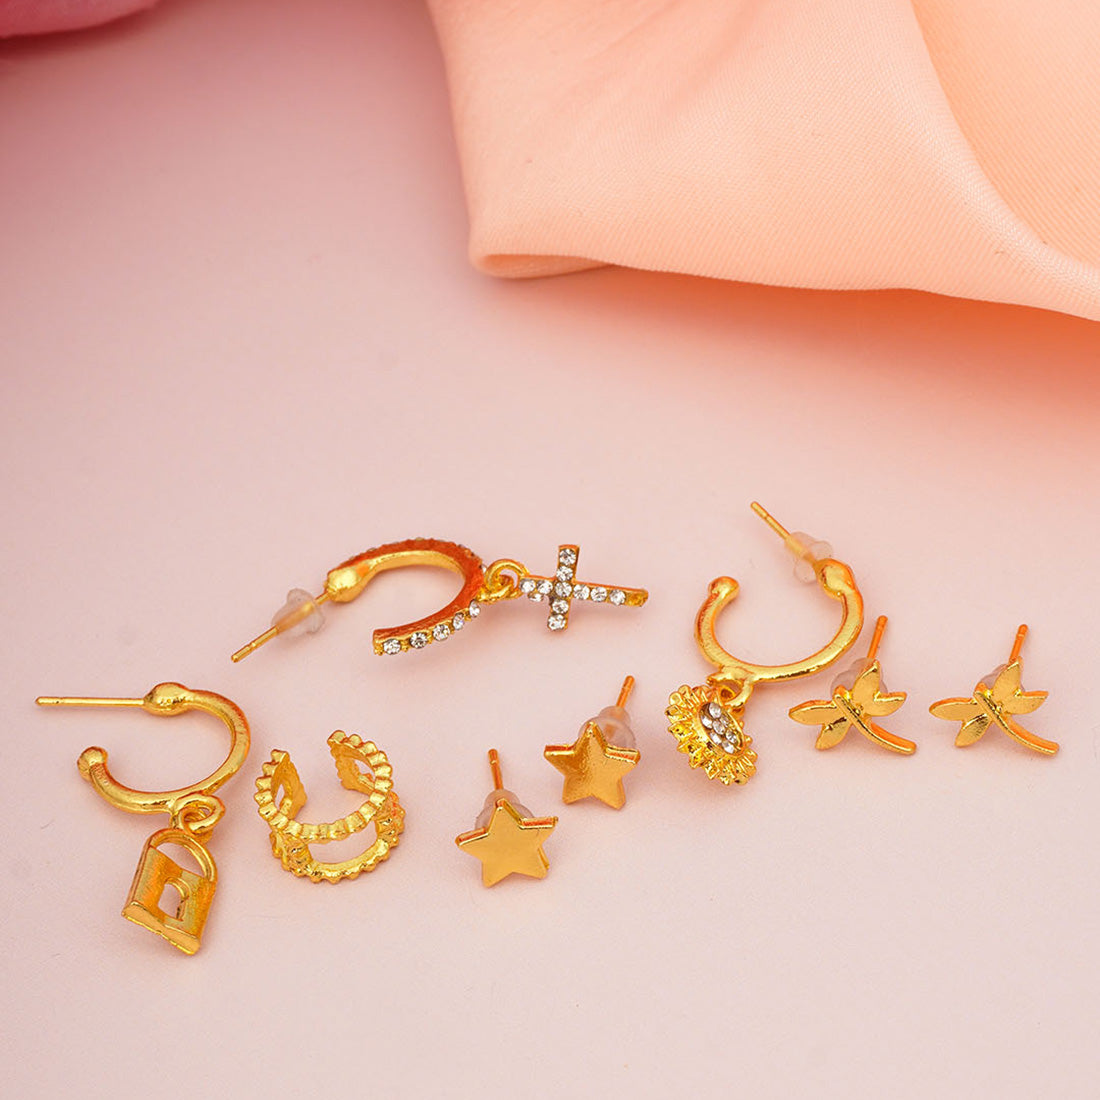 Gold Lock & Cross Earring Set Of 8